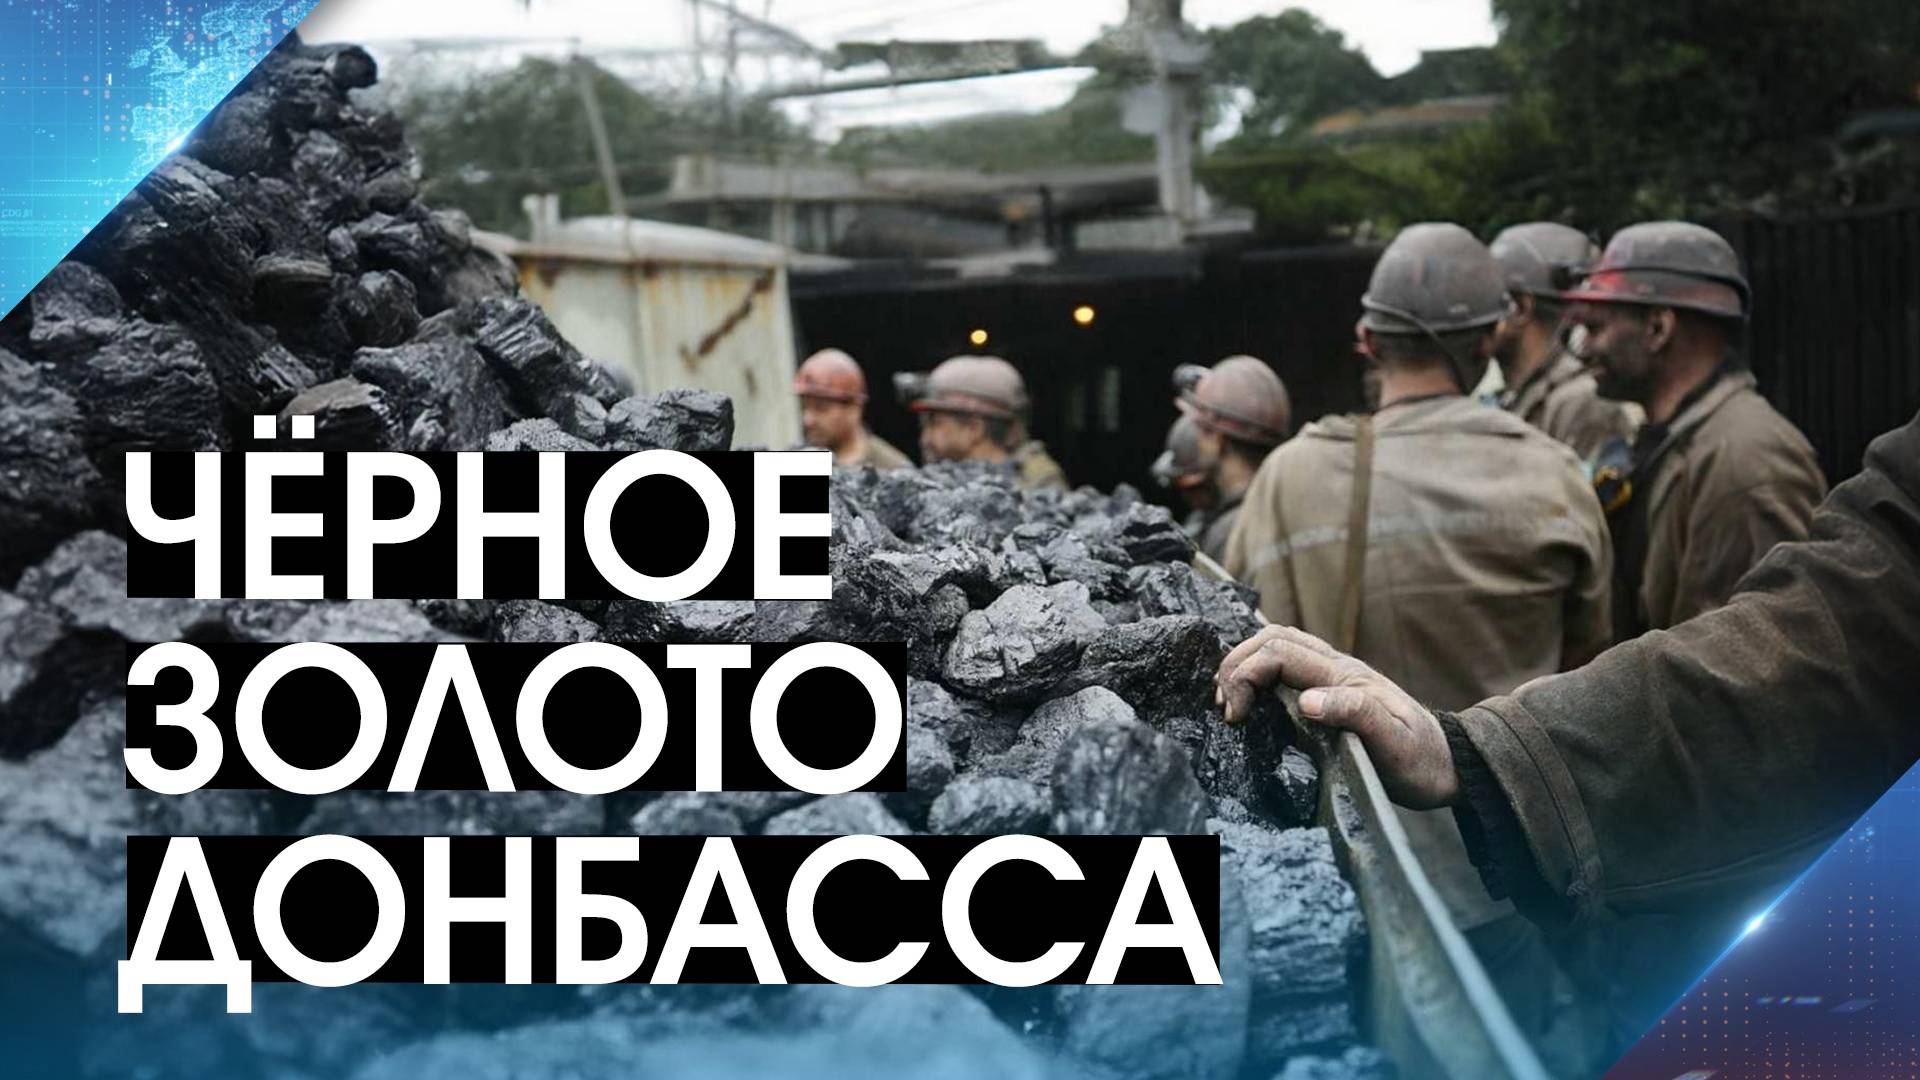 Инвесторы дали импульс отрасли! На крупнейшей шахте ДНР запустили лаву с запасом в 800 тонн угля